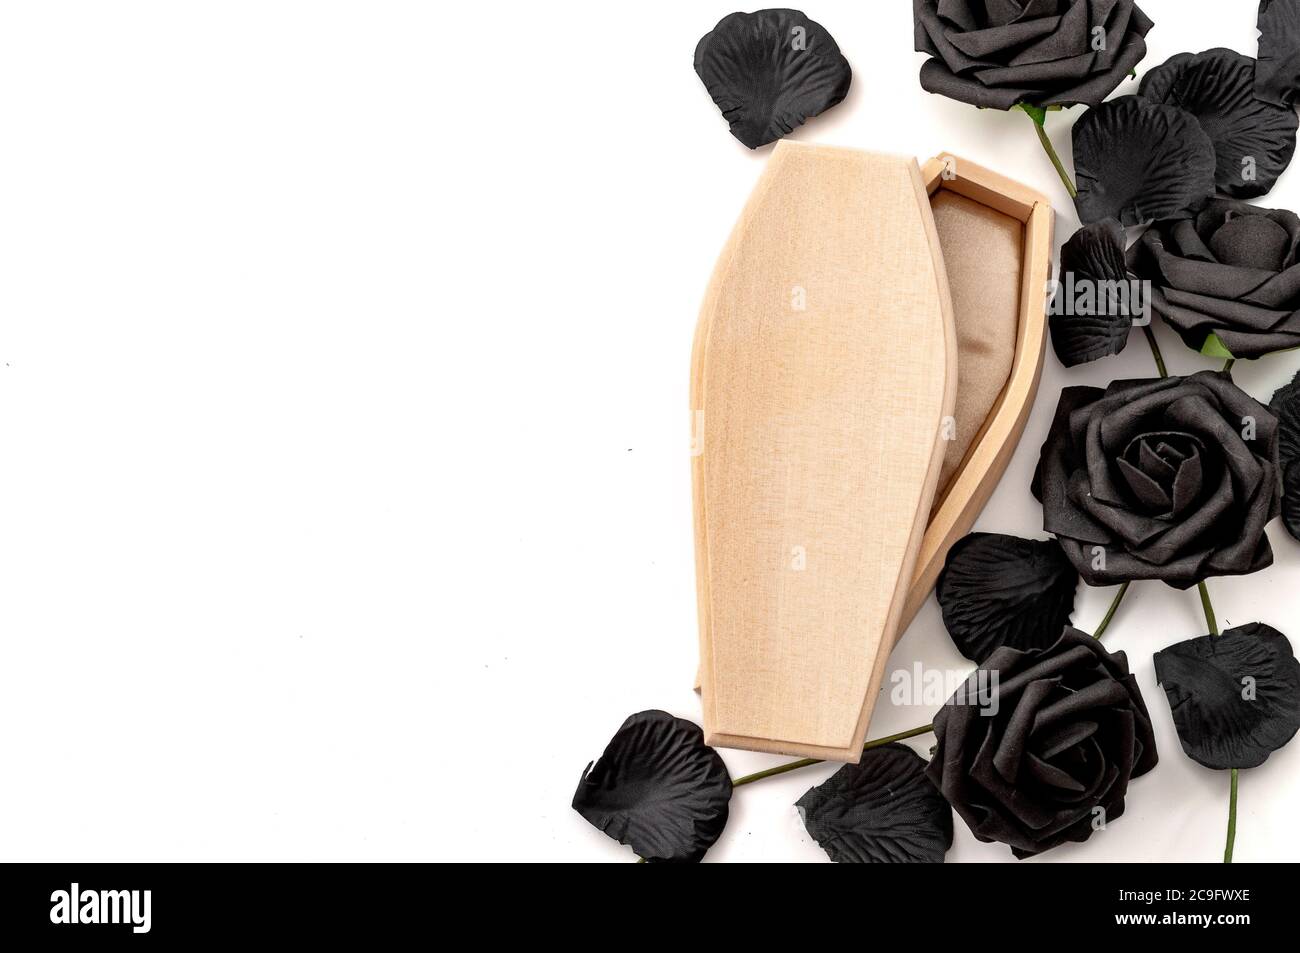 Last Auf Wiedersehen, Trauer um die Verstorbenen und Traurigkeit des Verlierens Lieben Konzept mit Holzsarg umgeben von schwarzen Rosen isoliert auf weißem Hintergrund Stockfoto